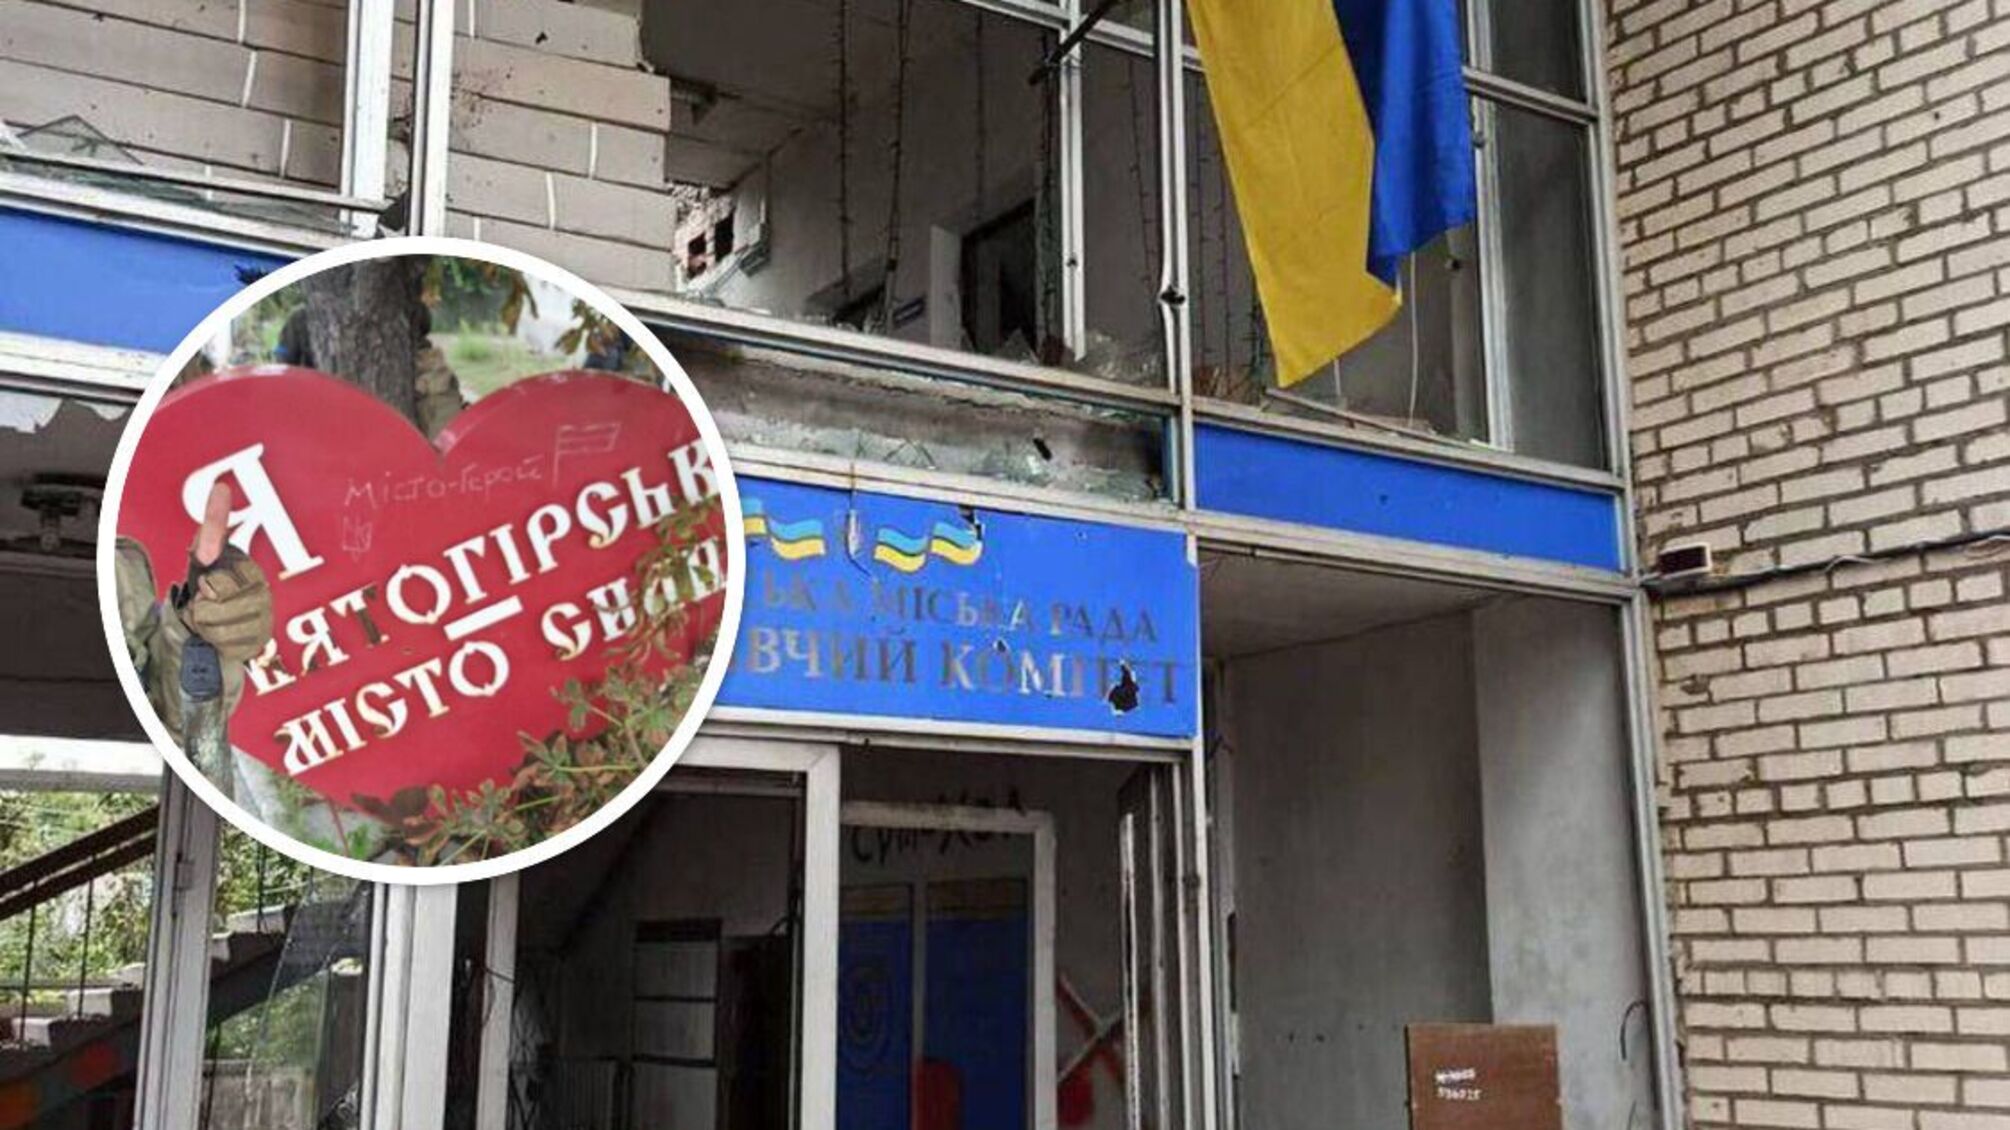 ВСУ вошли в Святогорск на Донетчине: опубликовано фото с украинским флагом